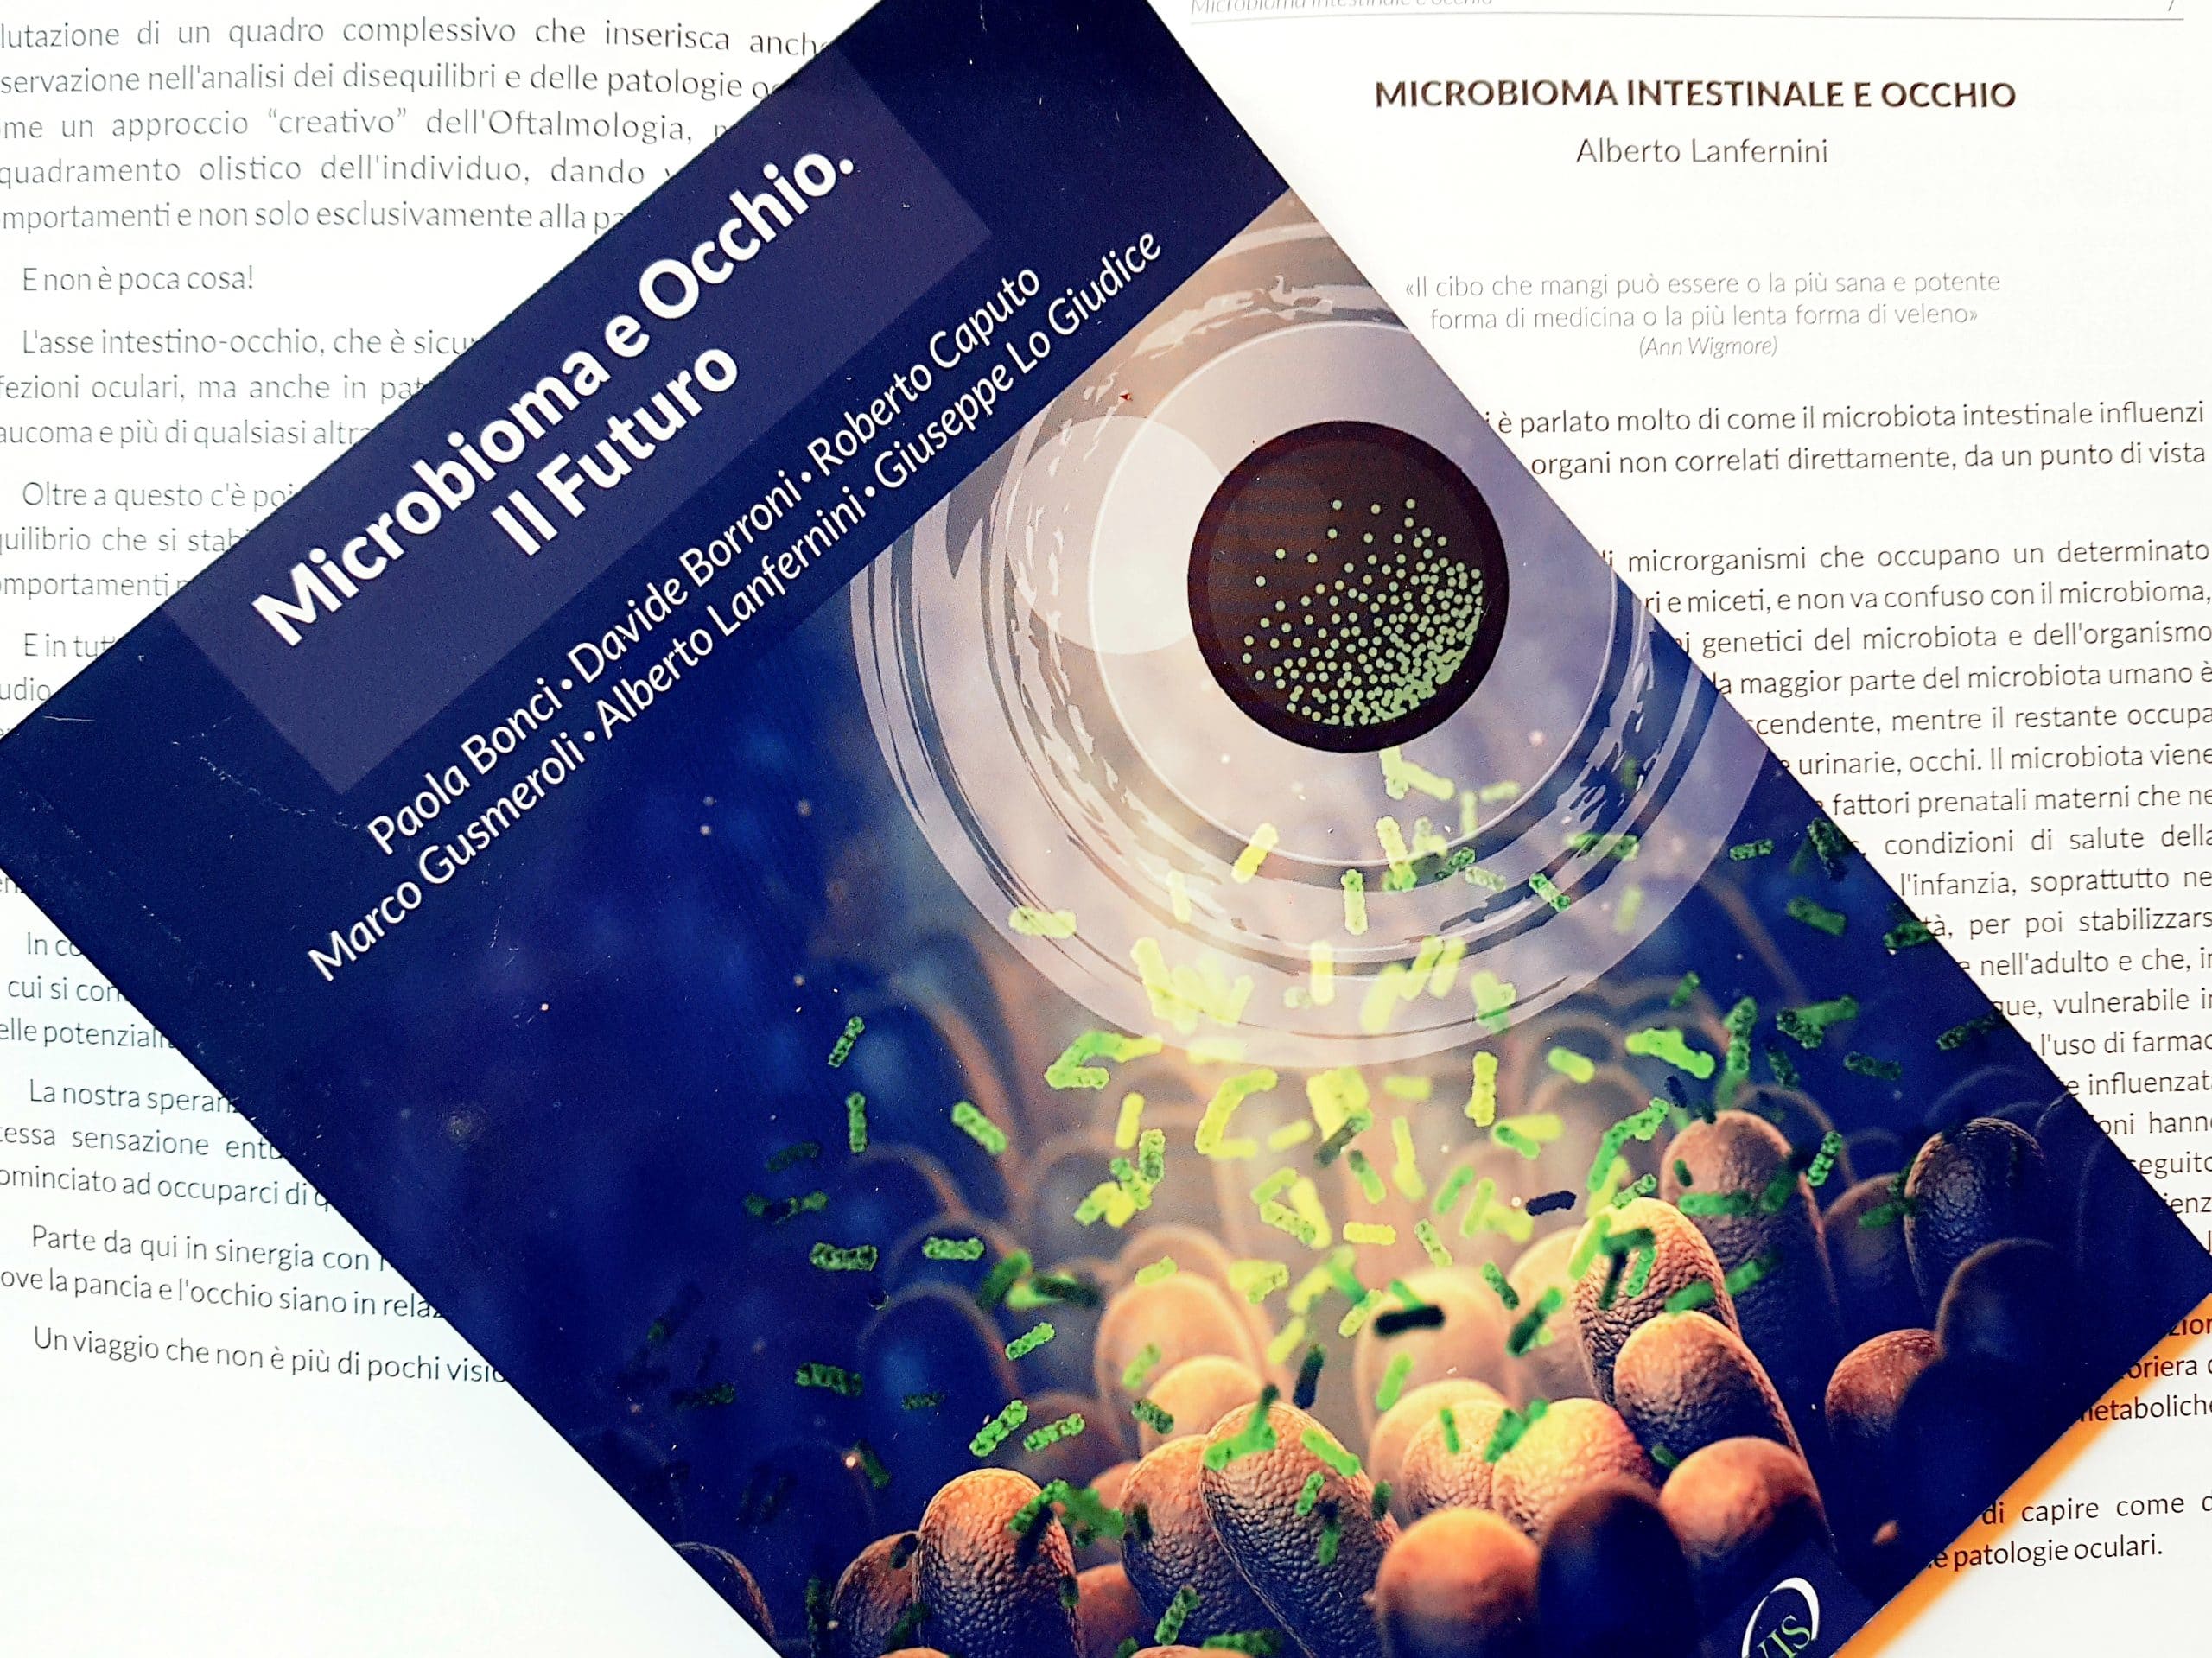 copertina del libro microbioma e occhio